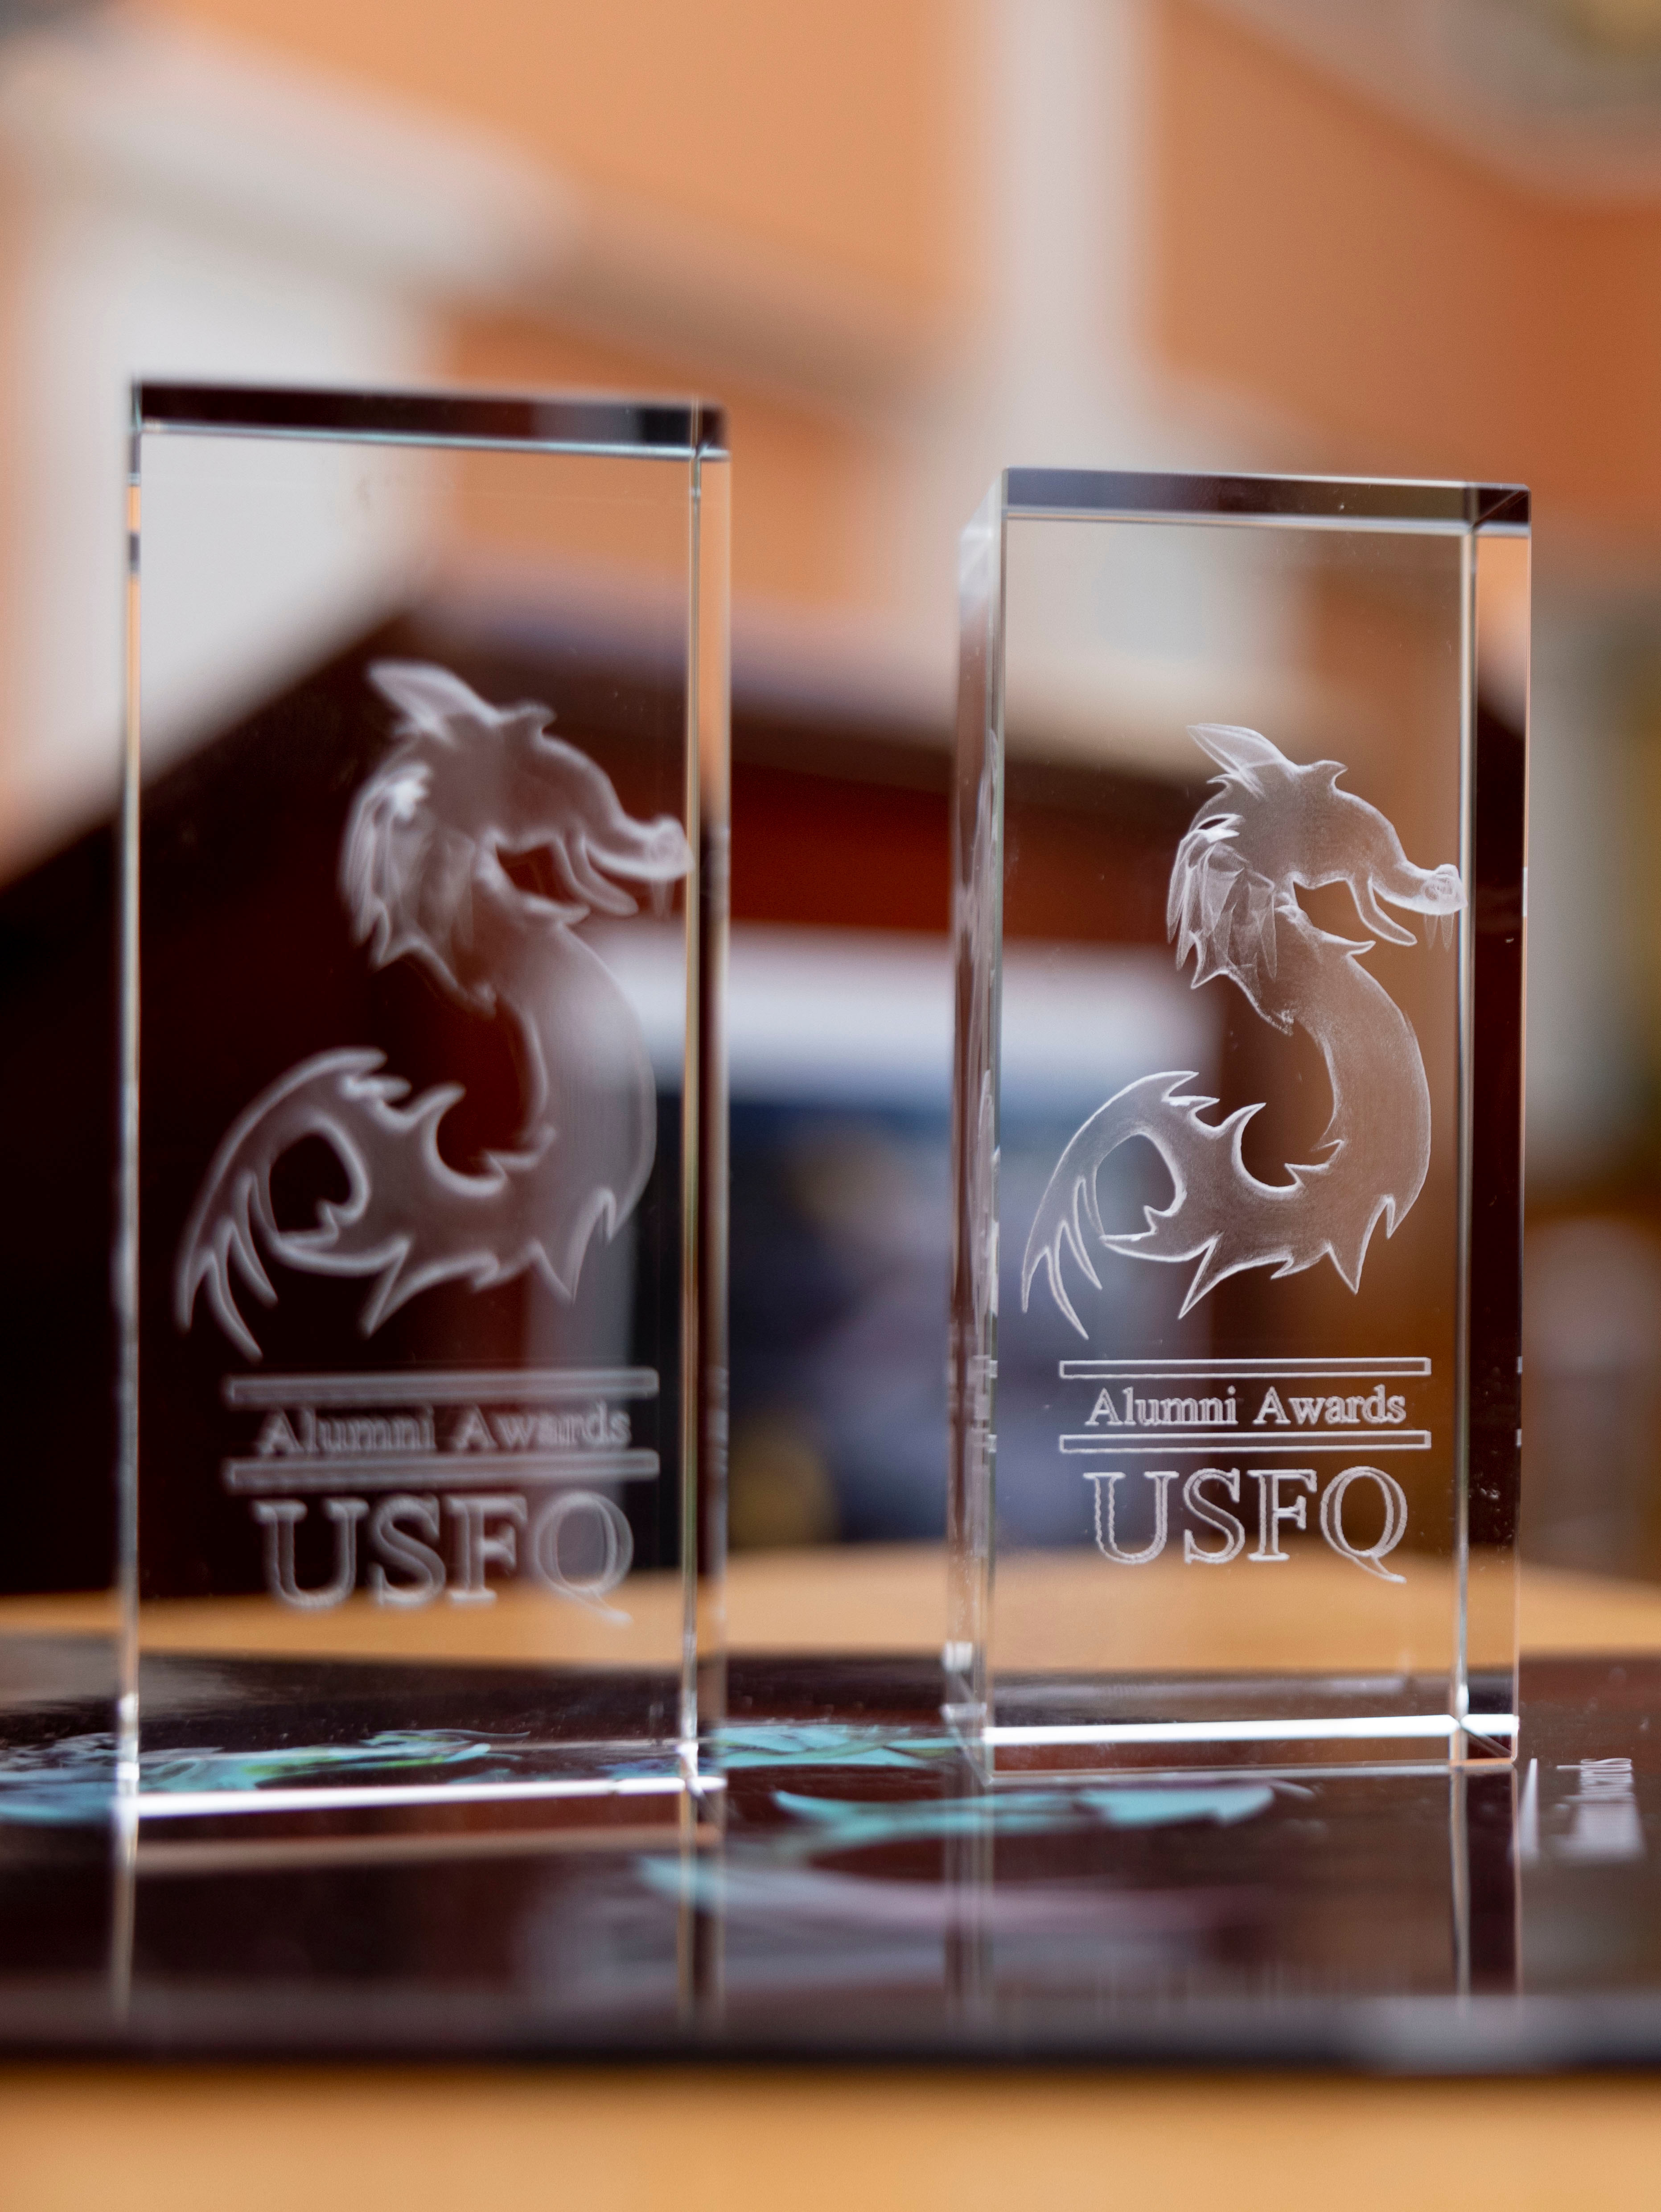 Alumni USFQ - Alumni Awards